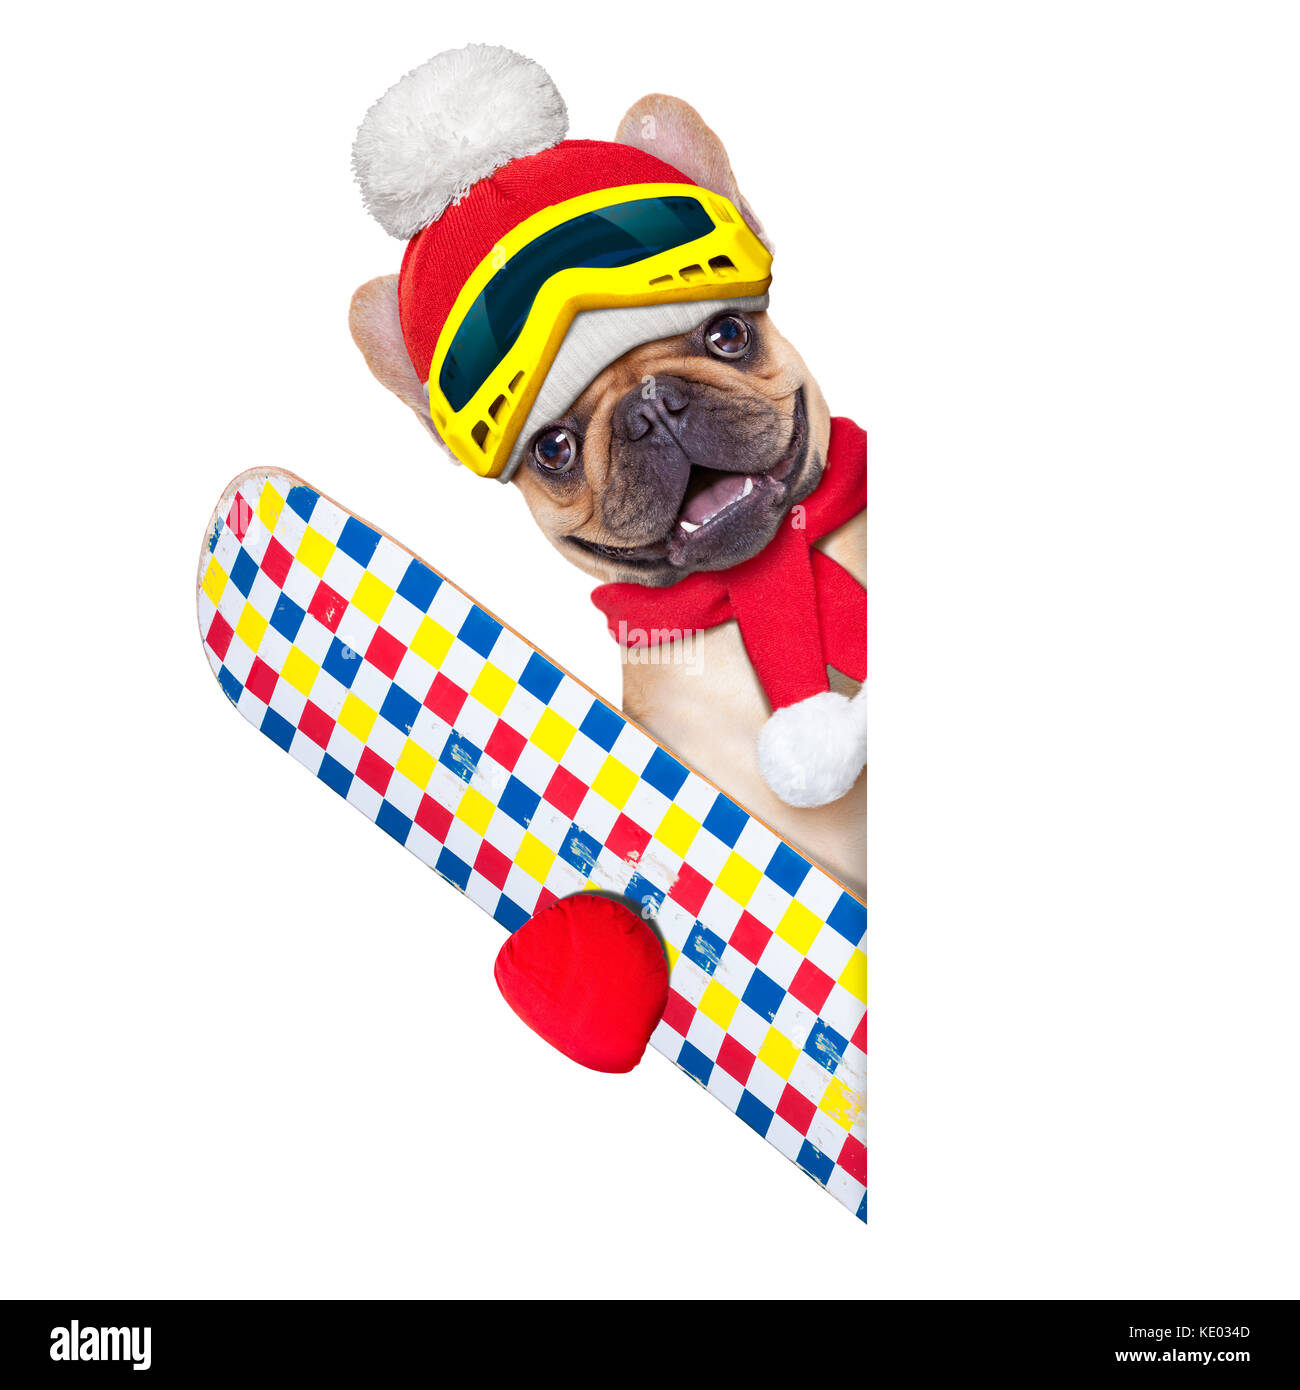 Fawn französische Bulldogge Hund mit Skiausrüstung, das Tragen von Schutzbrille, Handschuhe, einen Hut und ein roter Schal, neben einem weißen leeren Banner oder Plakat, isoliert auf weißem Stockfoto